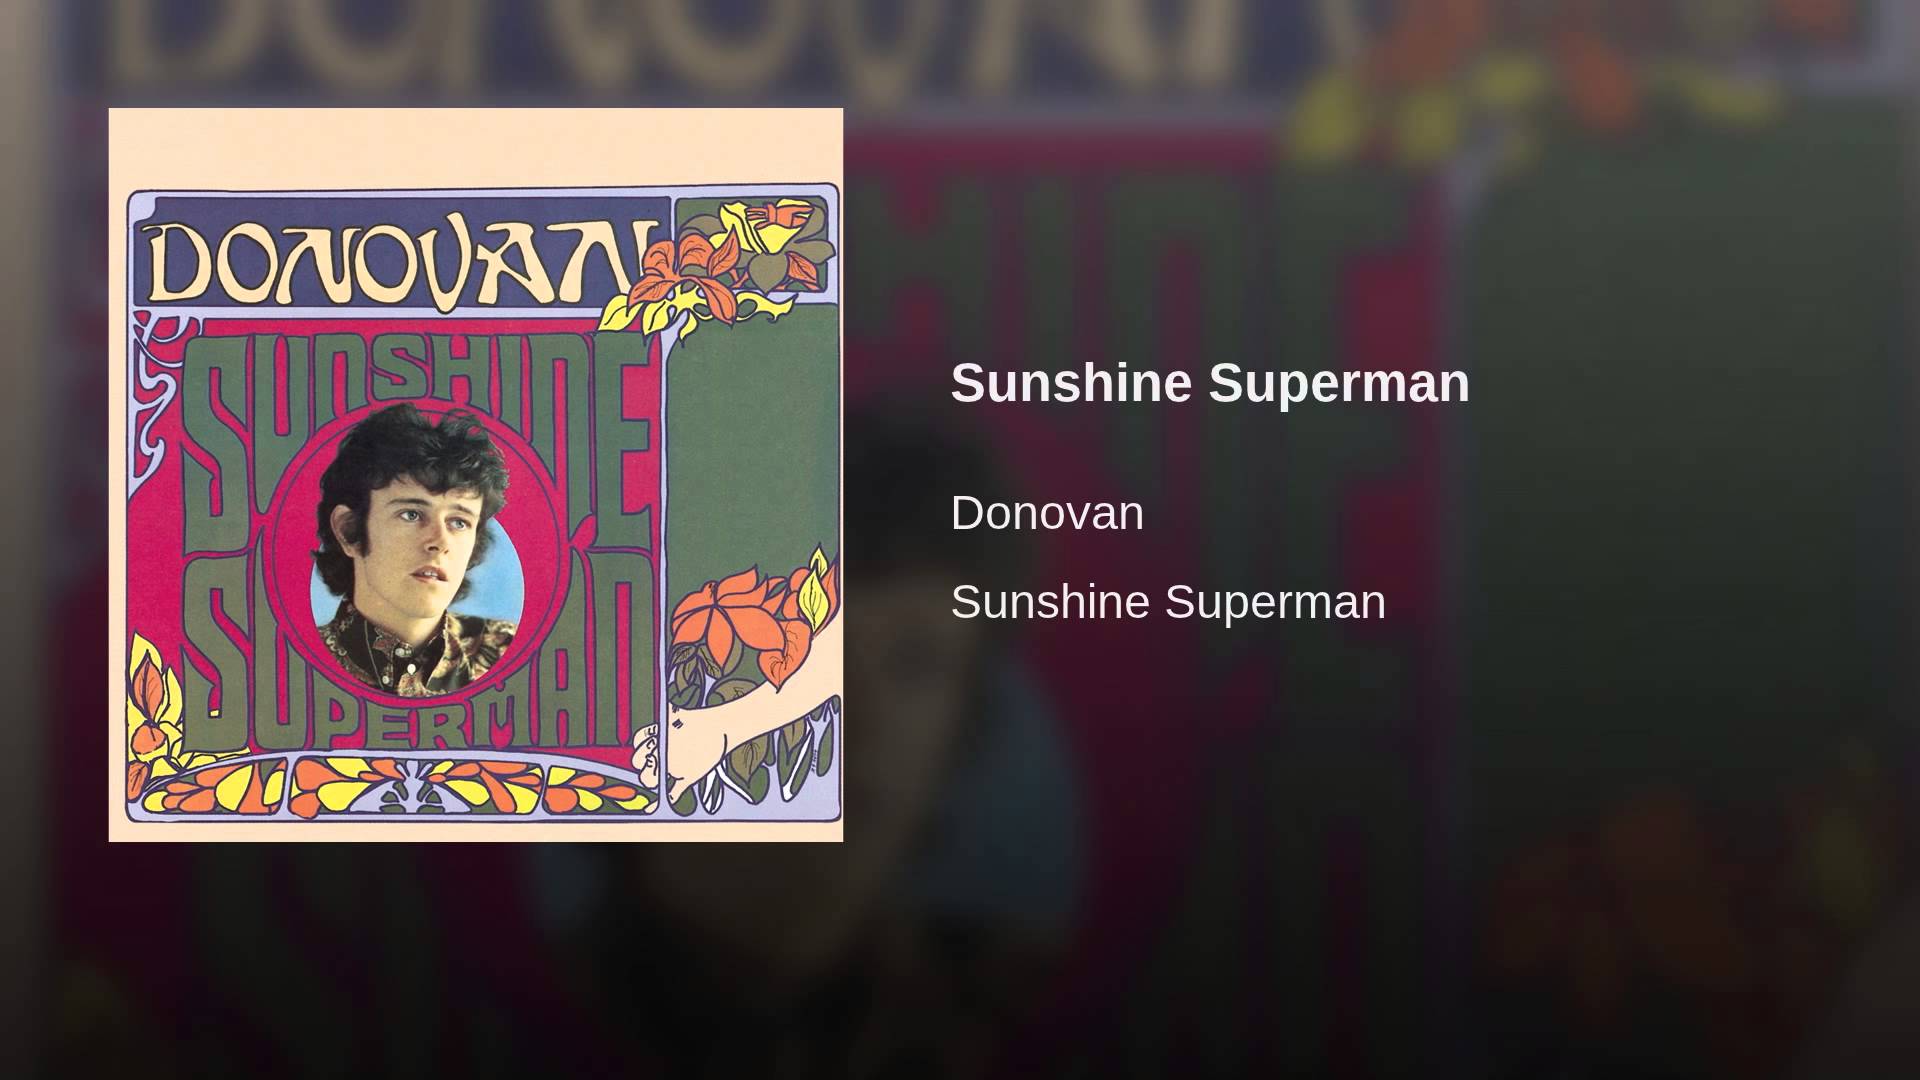 Sunshine Superman - YouTube